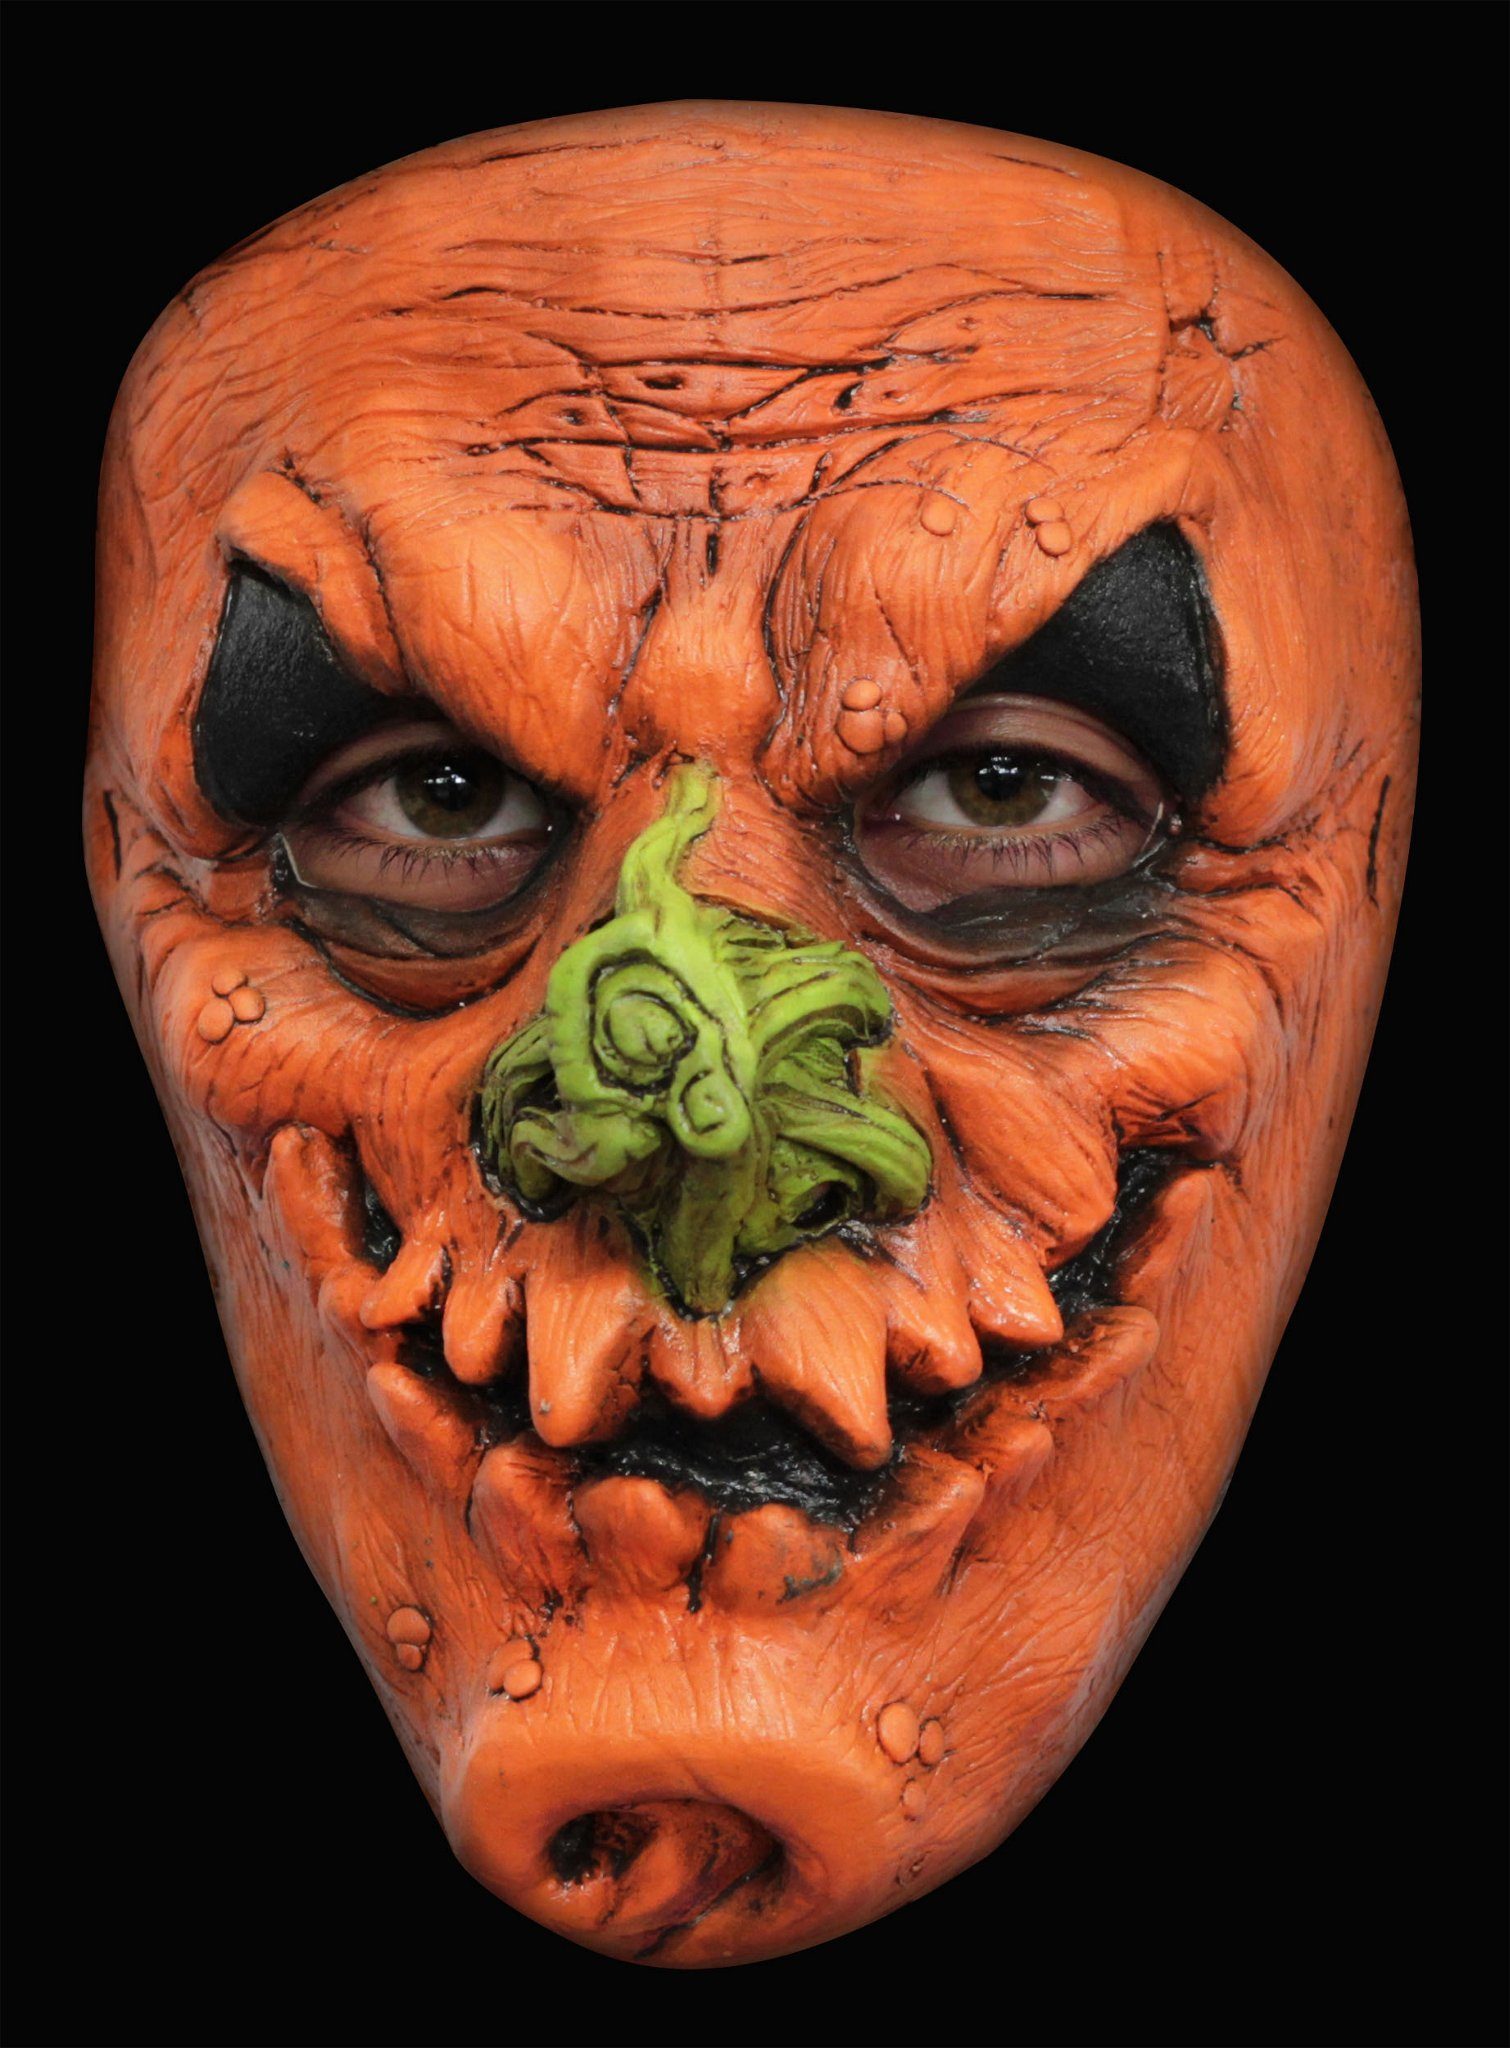 Metamorph Verkleidungsmaske Grinsekürbis Maske des Grauens, Schaurig-schöne Horrormaske - nicht nur für Halloween